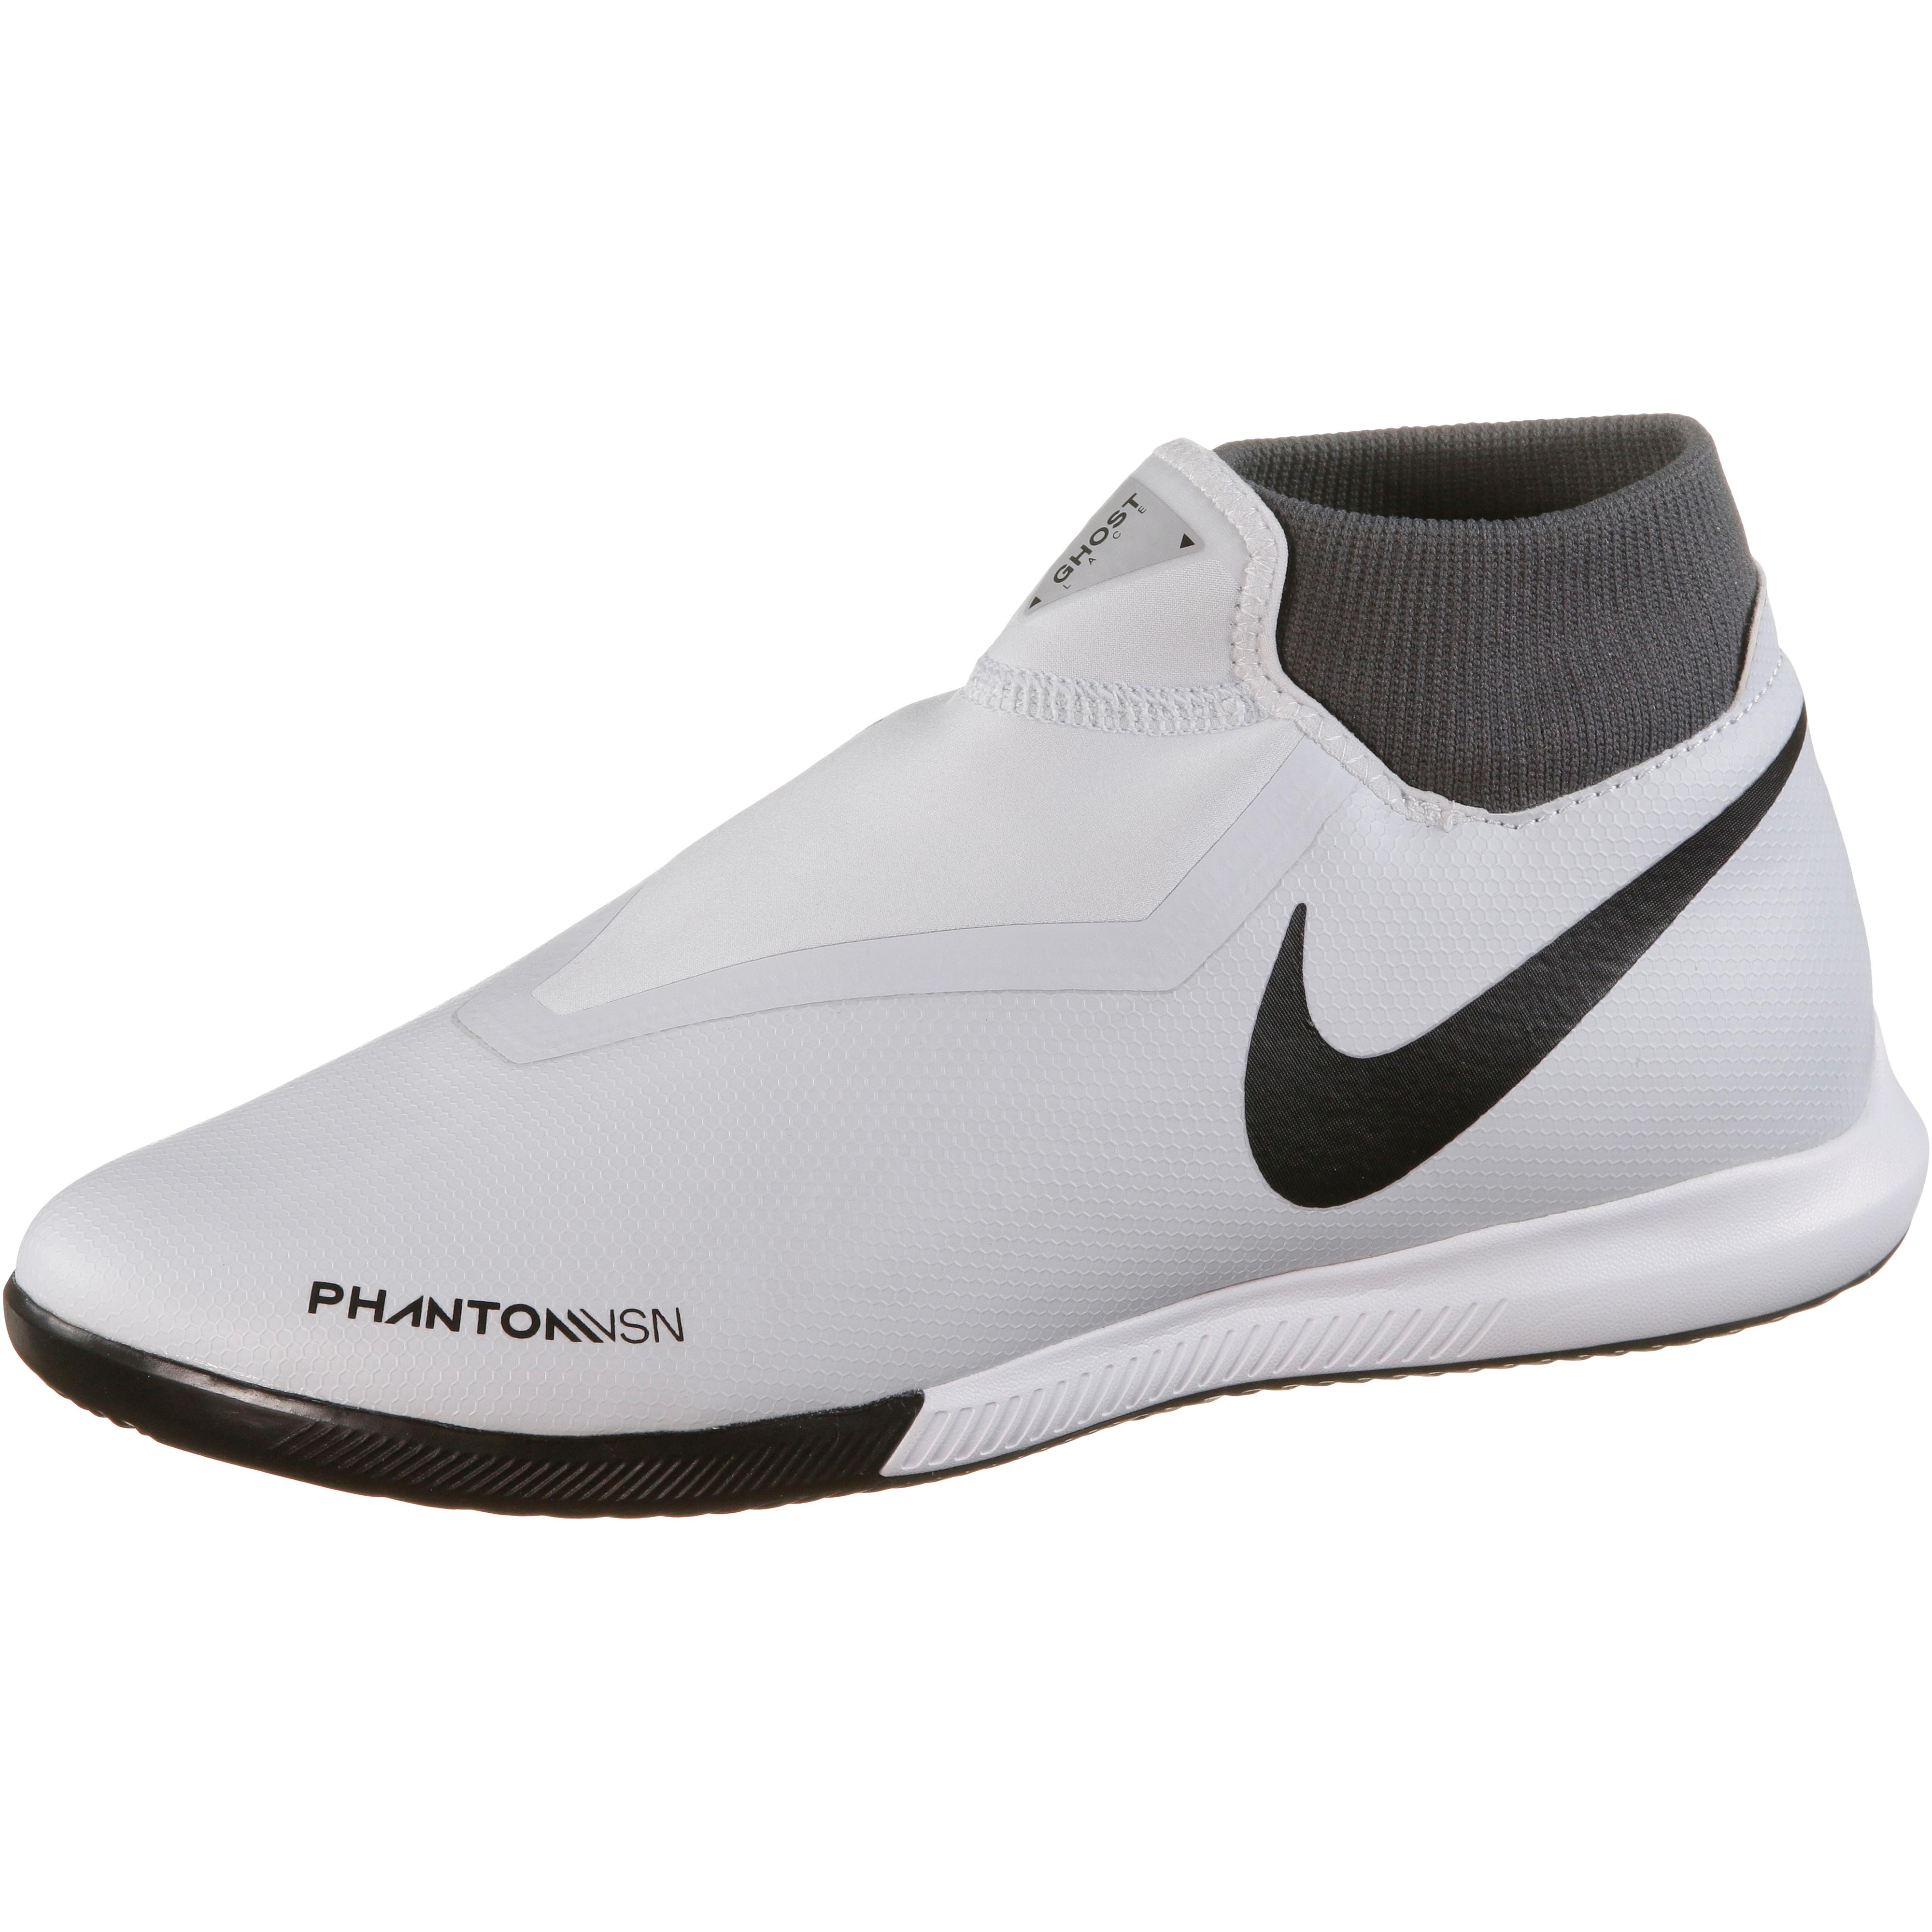 Nike jr phantom vsn academy df fg mg size 5y . eBay